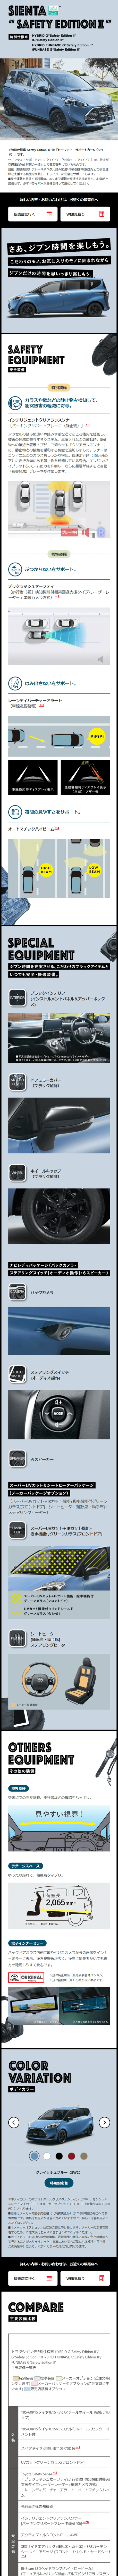 トヨタ シエンタ Safety EditionⅡ_sp_1